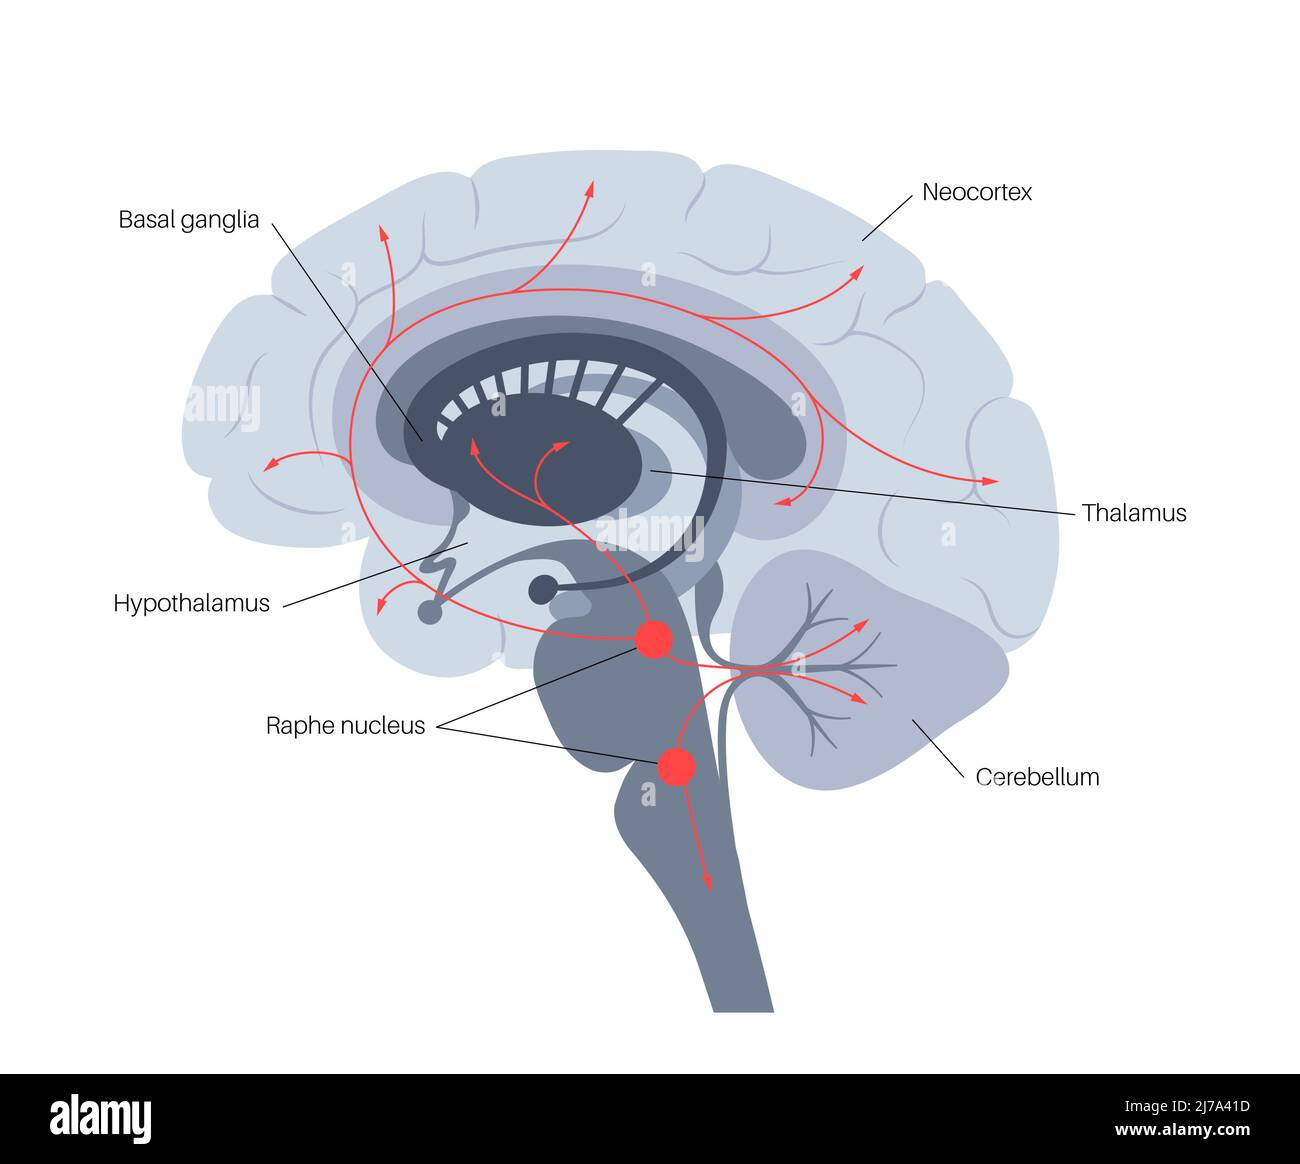 Serotonin pathway in brain, illustration Stock Photo